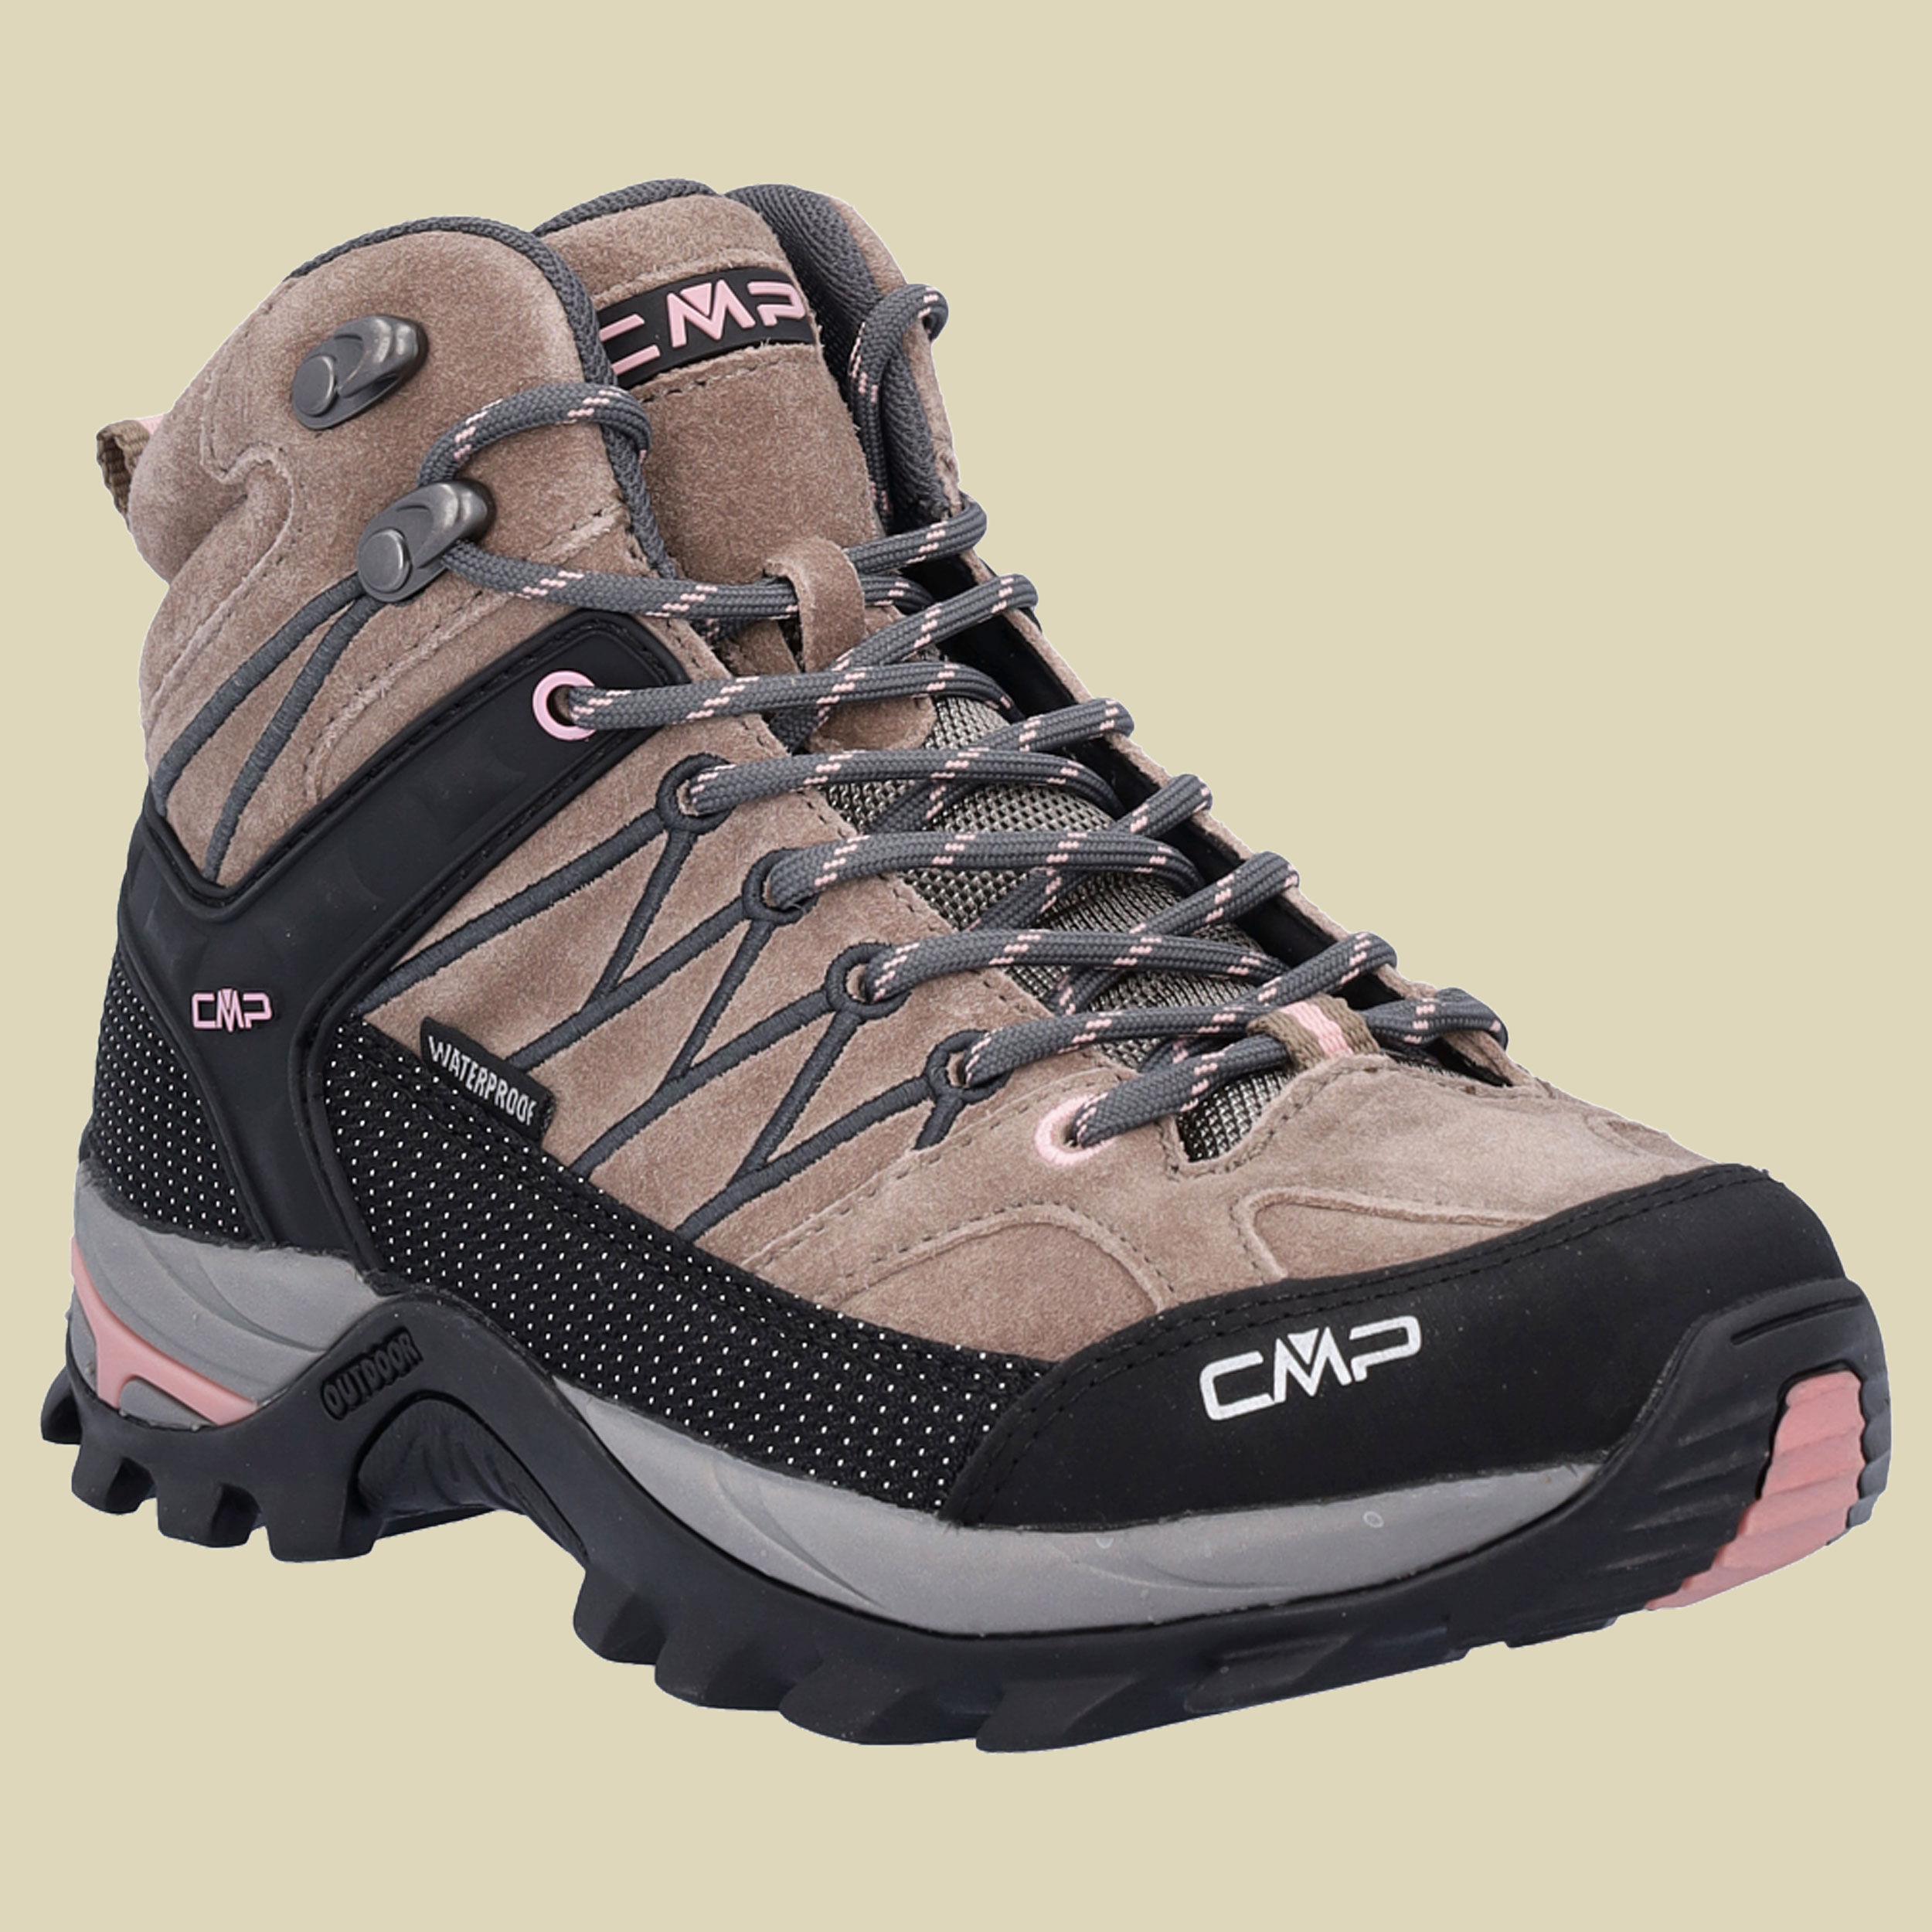 CMP Rigel Mid WMN Trekking Shoes WP Women Größe 40 Farbe P430 cenere